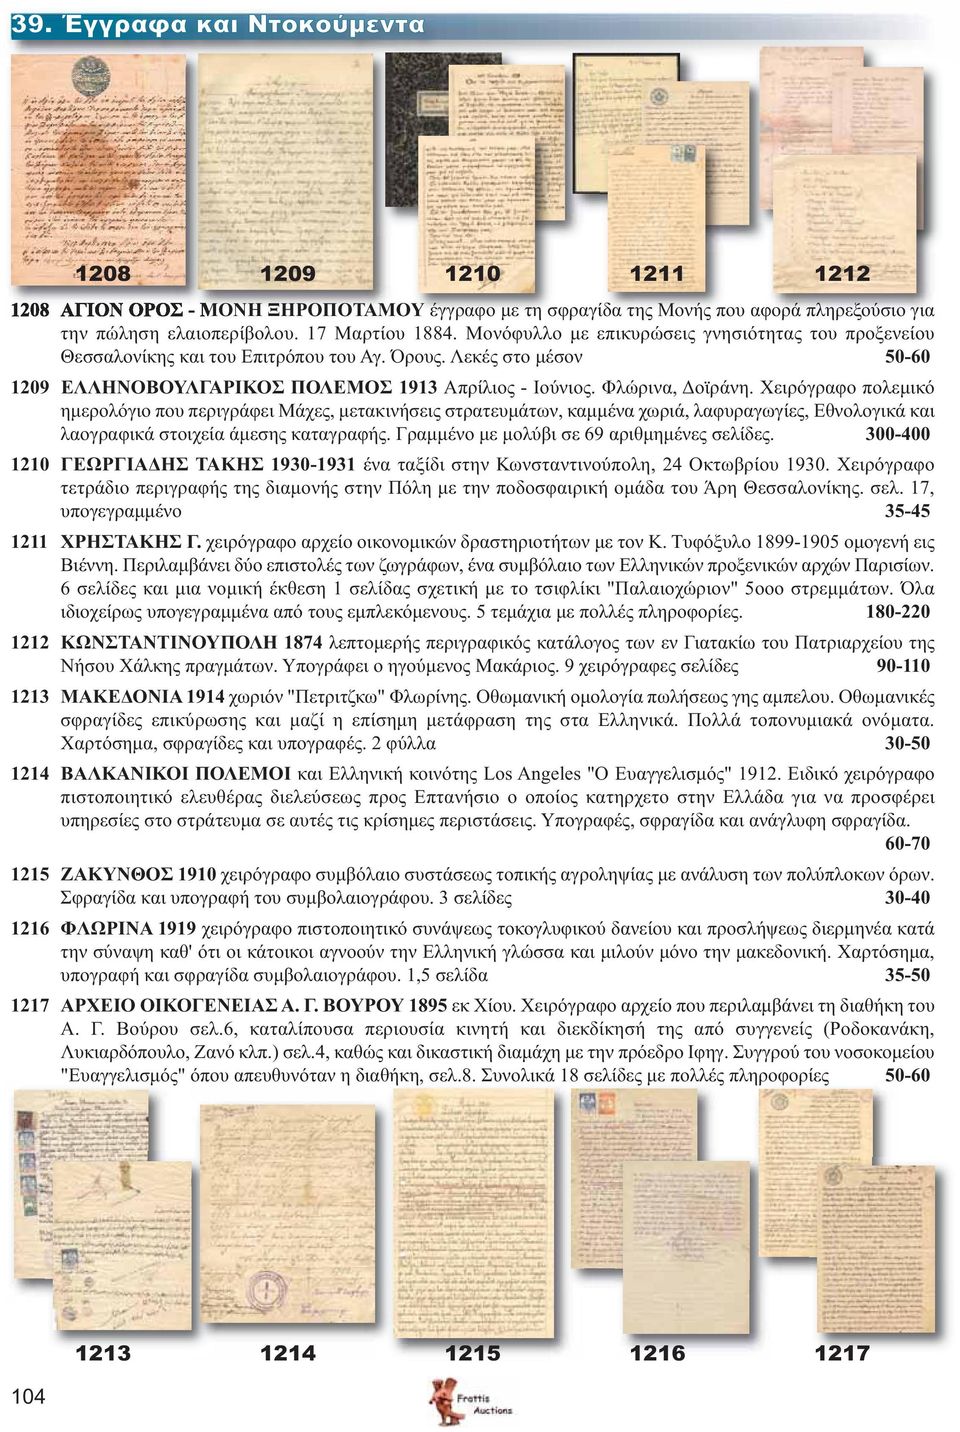 Χειρόγραφο πολεμικό ημερολόγιο που περιγράφει Μάχες, μετακινήσεις στρατευμάτων, καμμένα χωριά, λαφυραγωγίες, Εθνολογικά και λαογραφικά στοιχεία άμεσης καταγραφής.